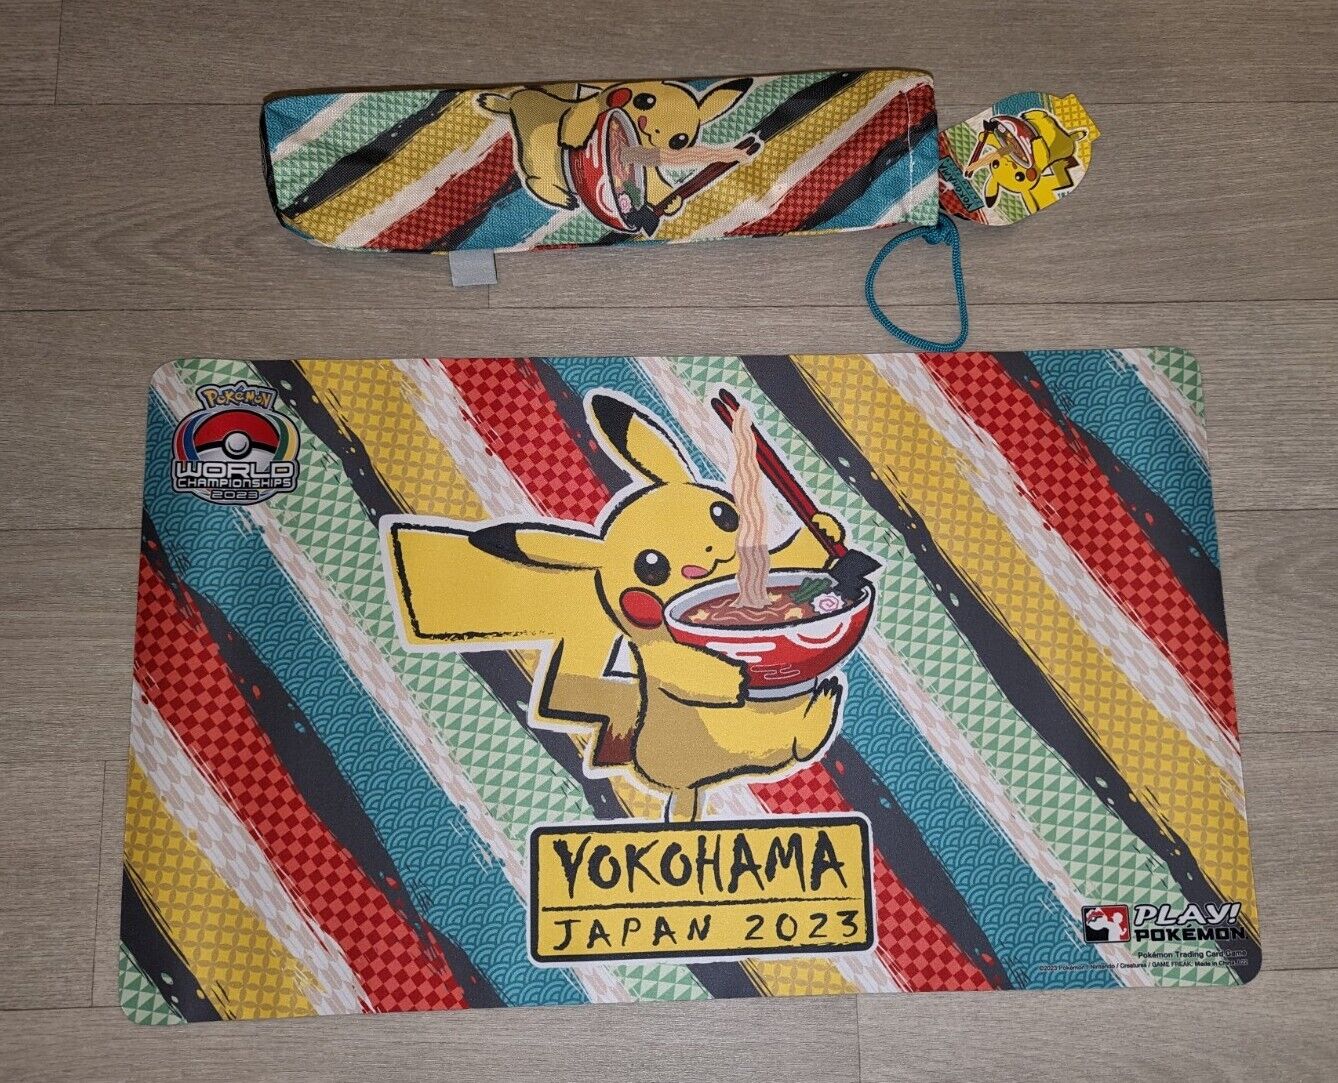 Playmat Pokemon World Championship Yokohama 2023 (Pikachu Ramen)